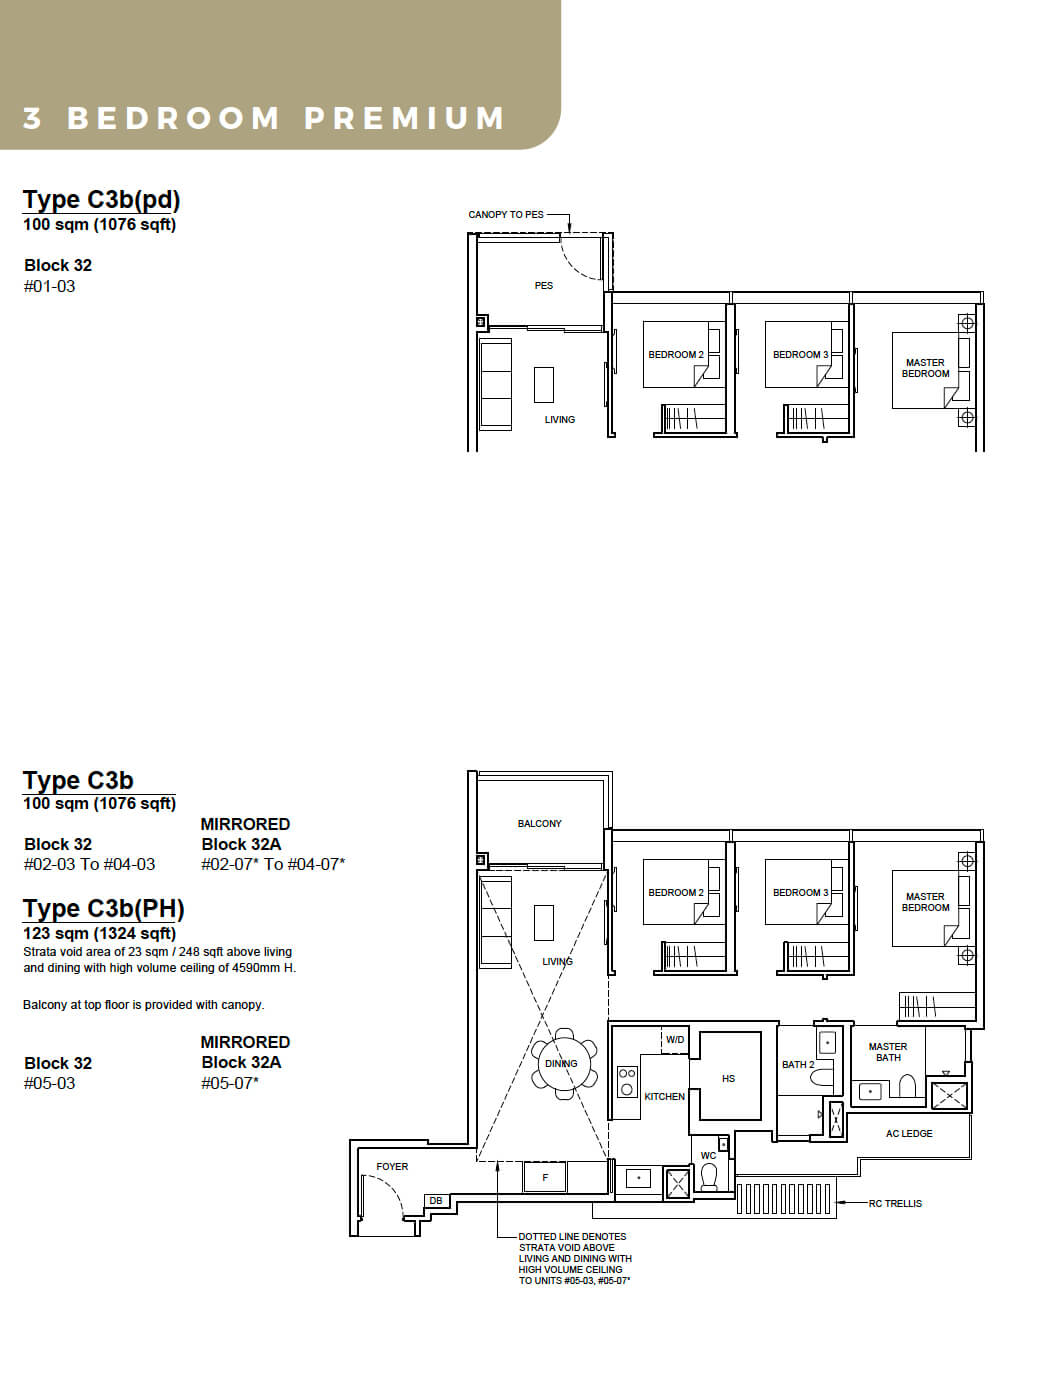 Forett at Bukit Timah Floor Plan 3-Bedroom Premium Type C3b